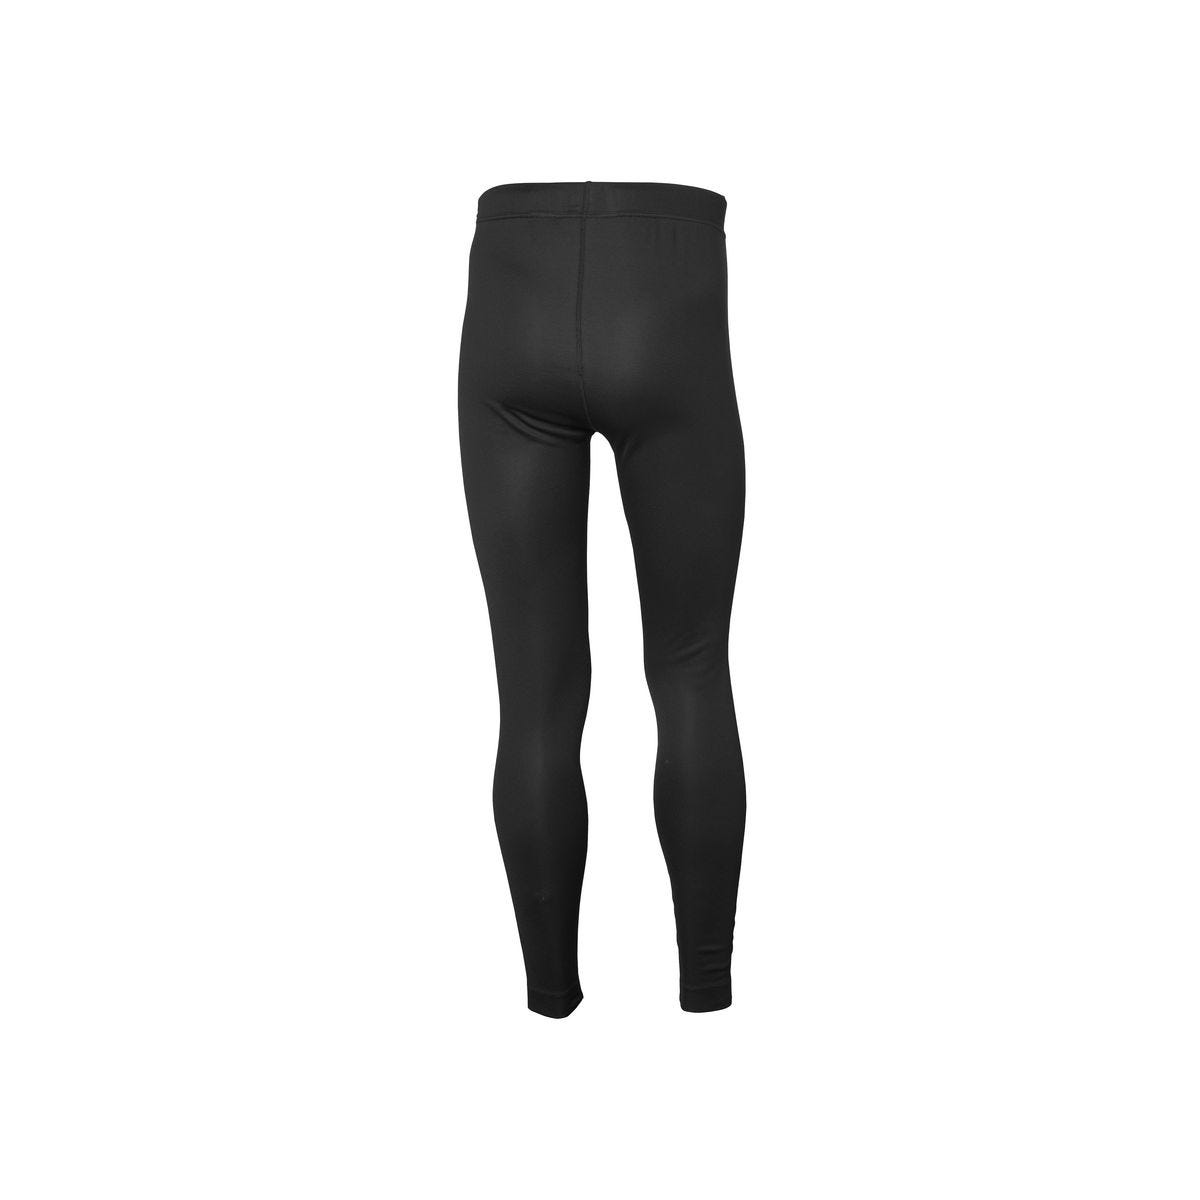 Pantalon sous-vêtement technique Lifa Noir - Helly Hansen - Taille M 1